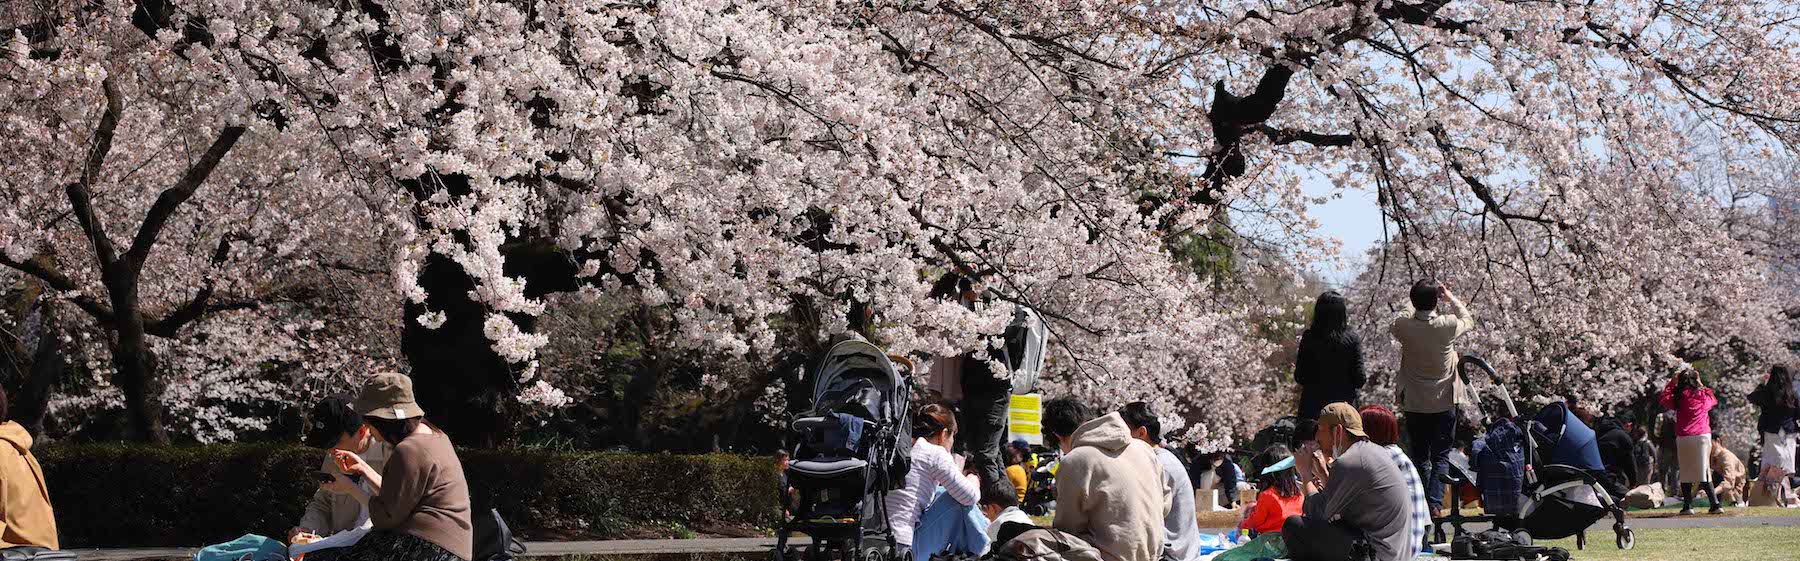 È il momento dell’hanami, la spettacolare fioritura dei ciliegi giapponesi